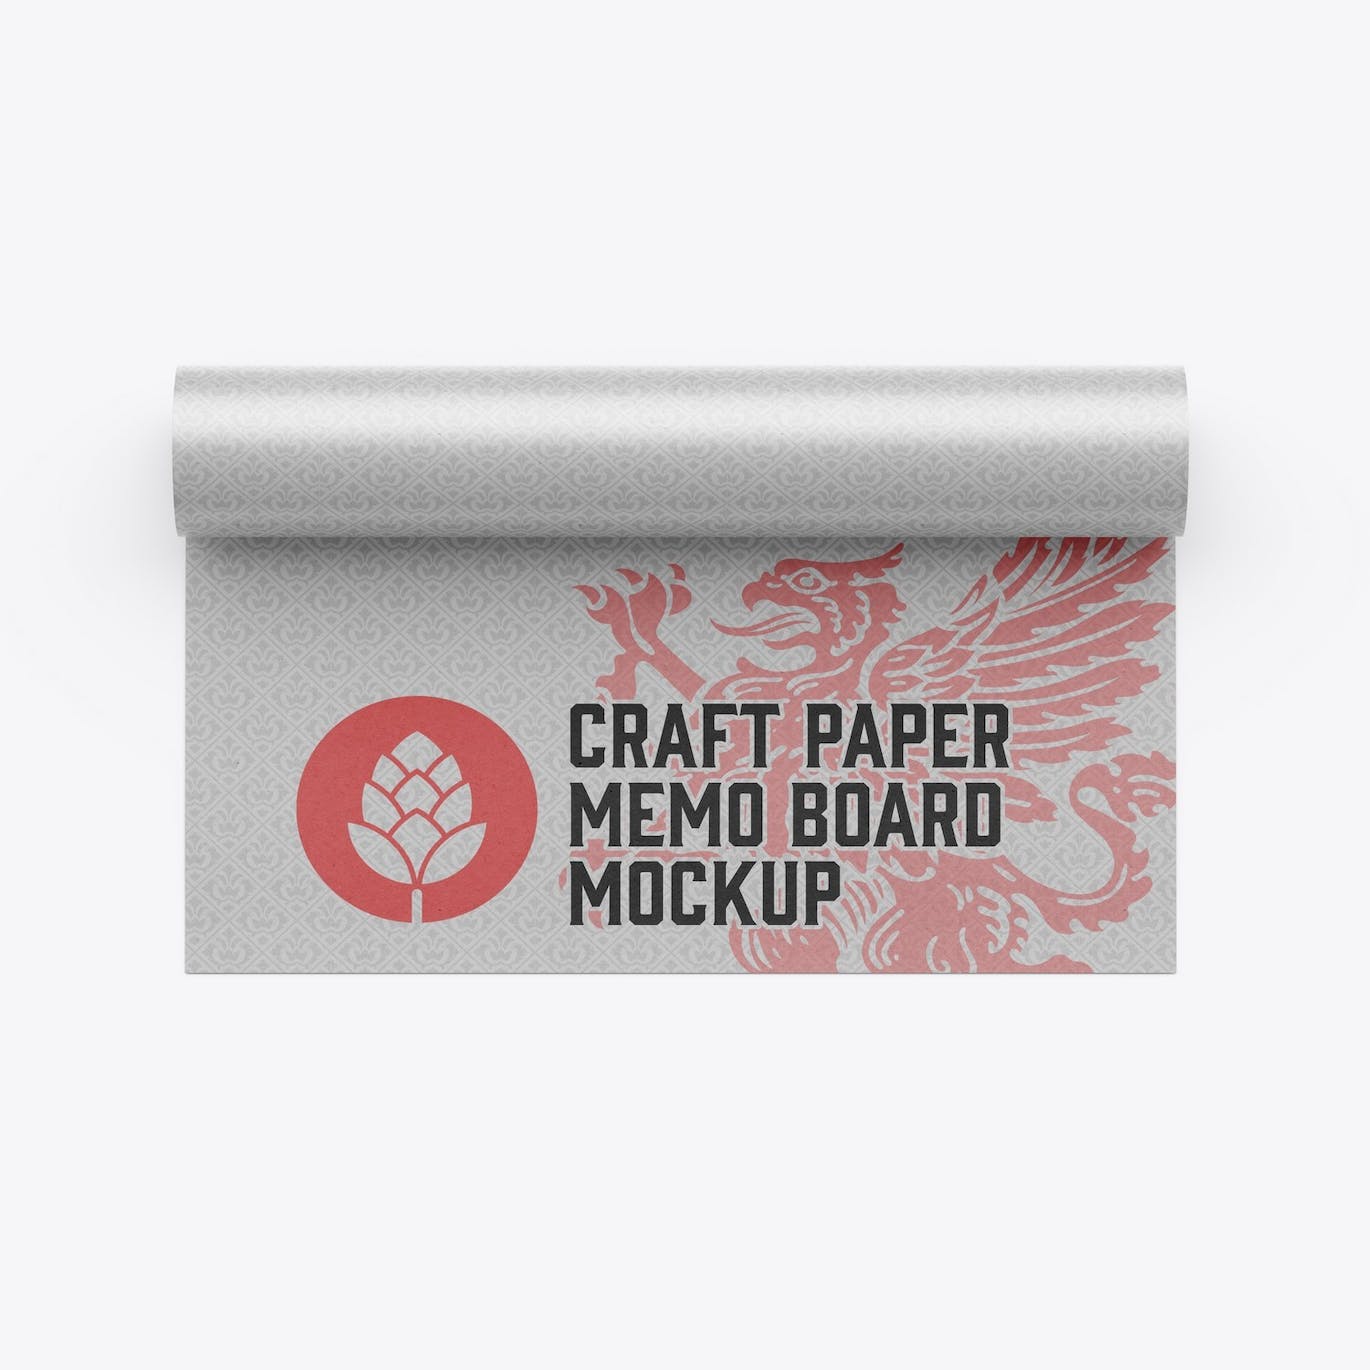 纸卷图案Logo设计样机 Paper Roll Mockup 样机素材 第4张